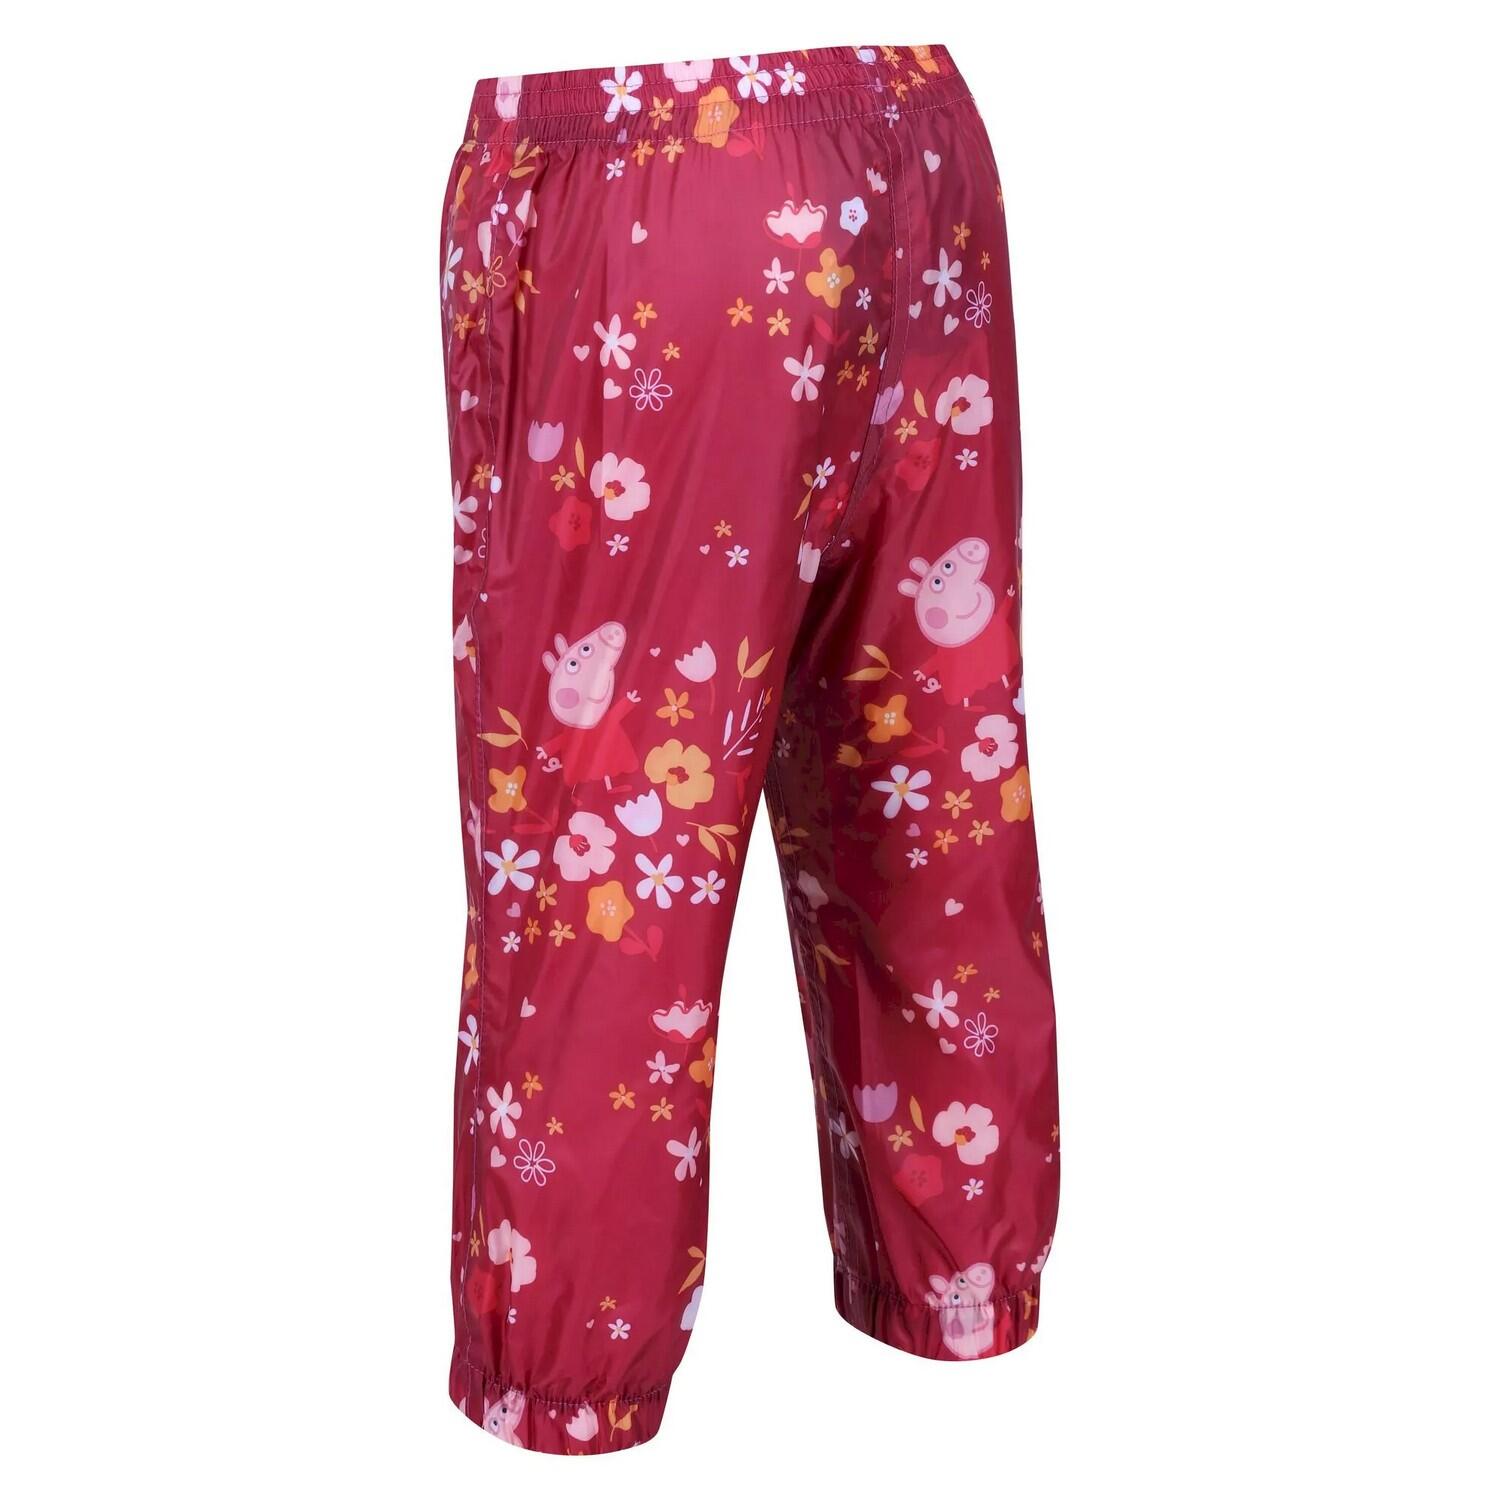 Childrens/Kids Floral Peppa Pig Packaway Waterproof Trousers (Berry Pink) 4/5